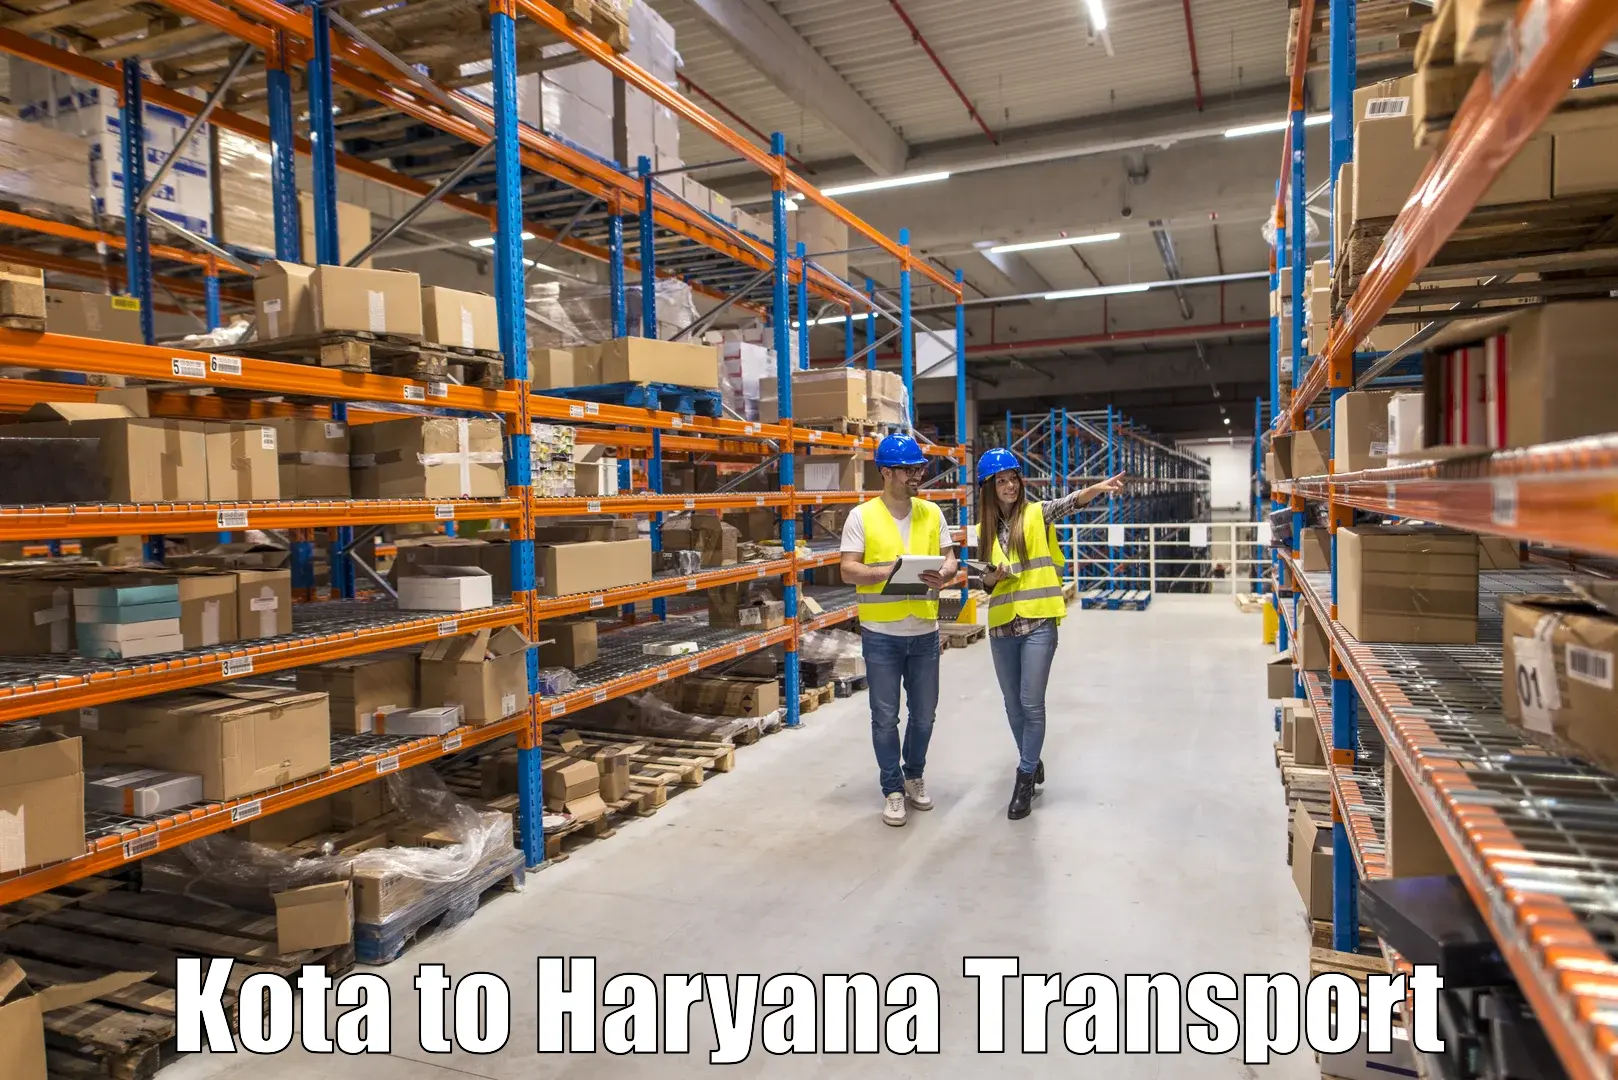 Transport in sharing Kota to Gurgaon